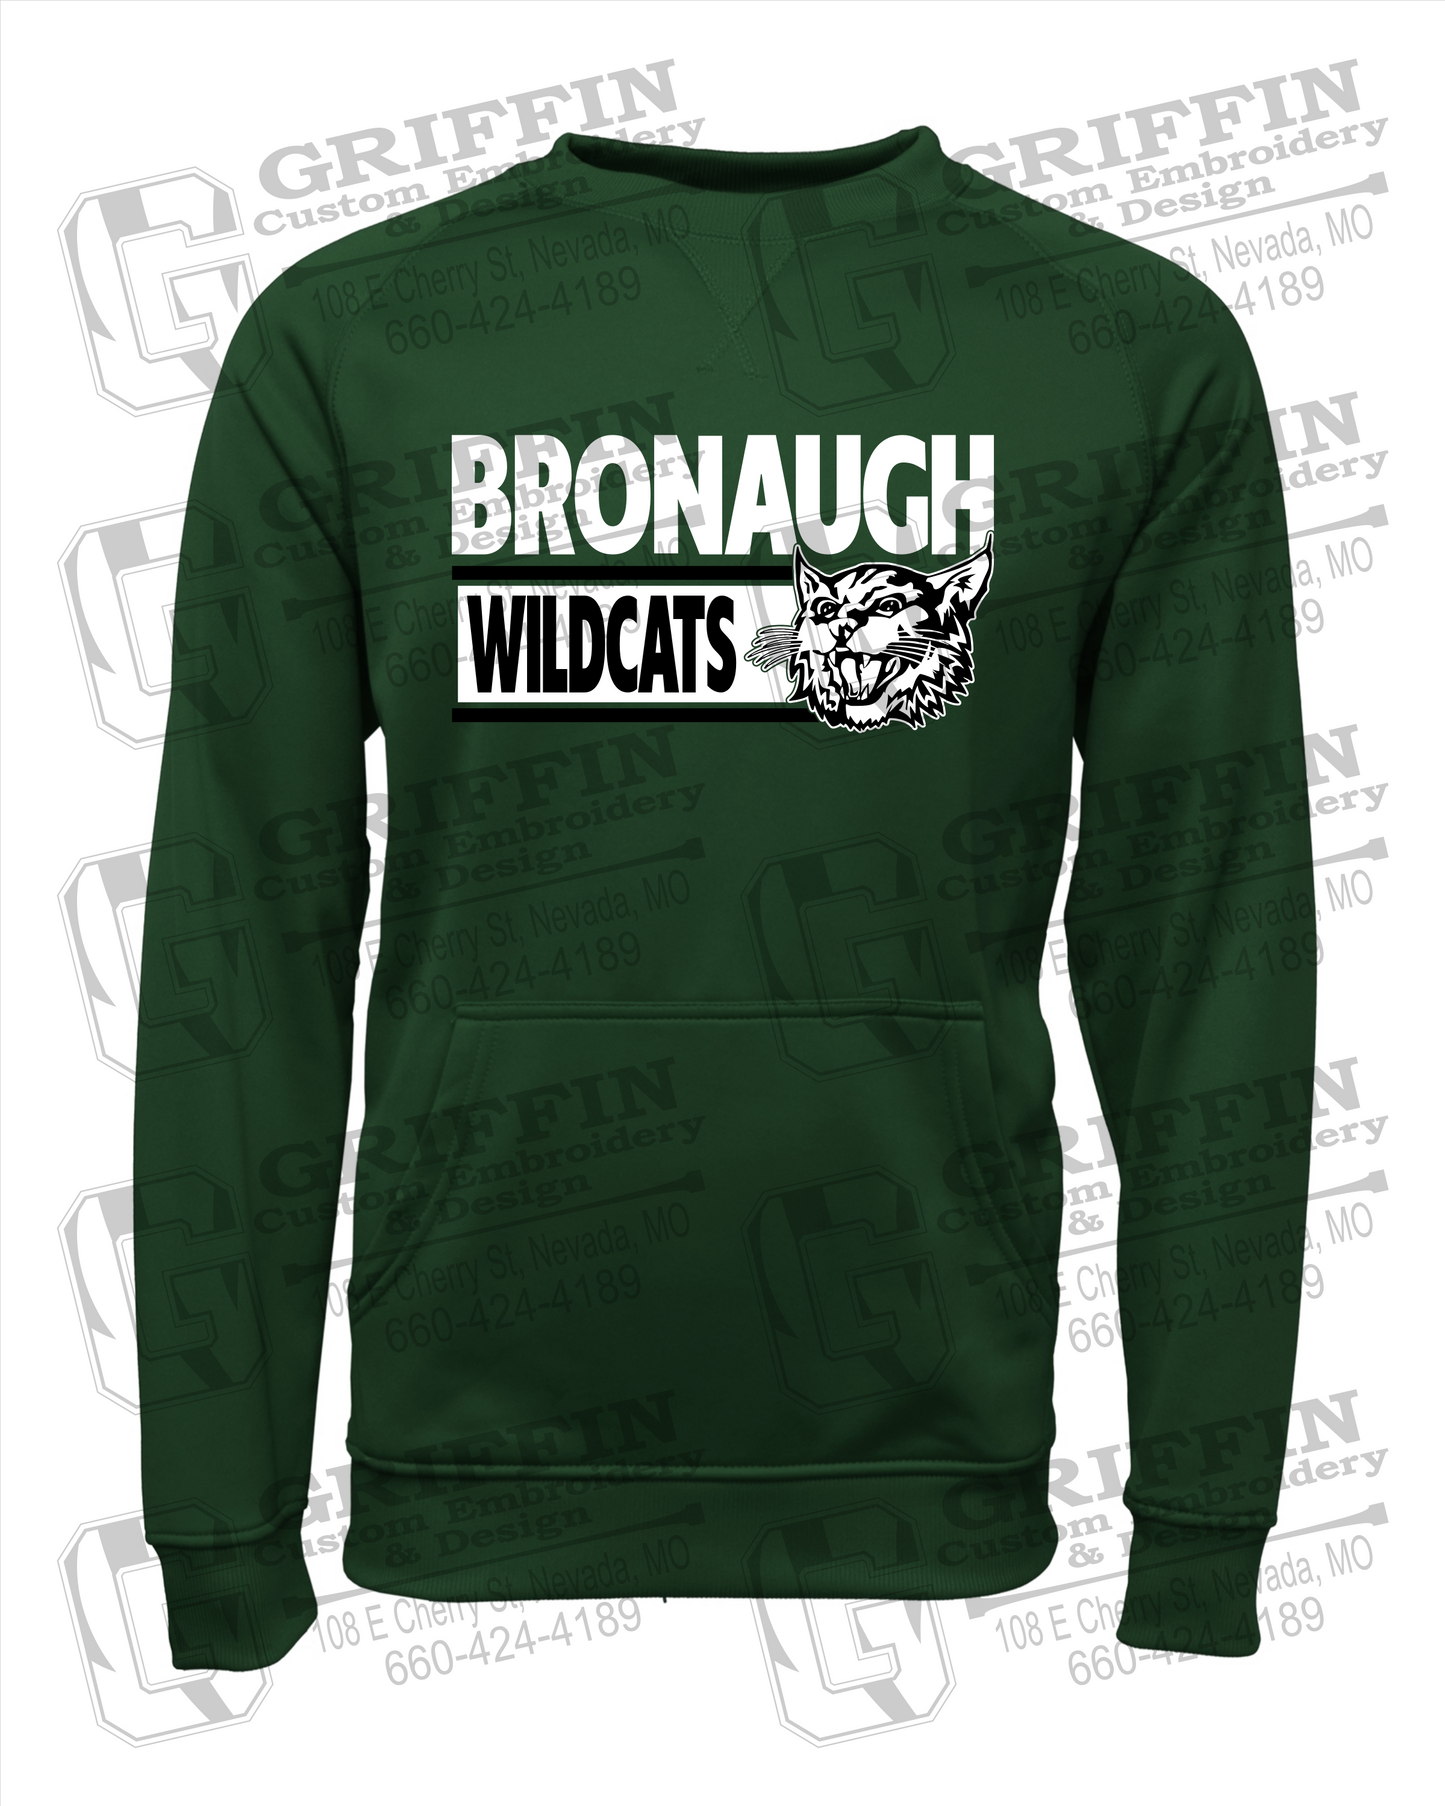 Bronaugh Wildcats 24-B Youth Sweatshirt